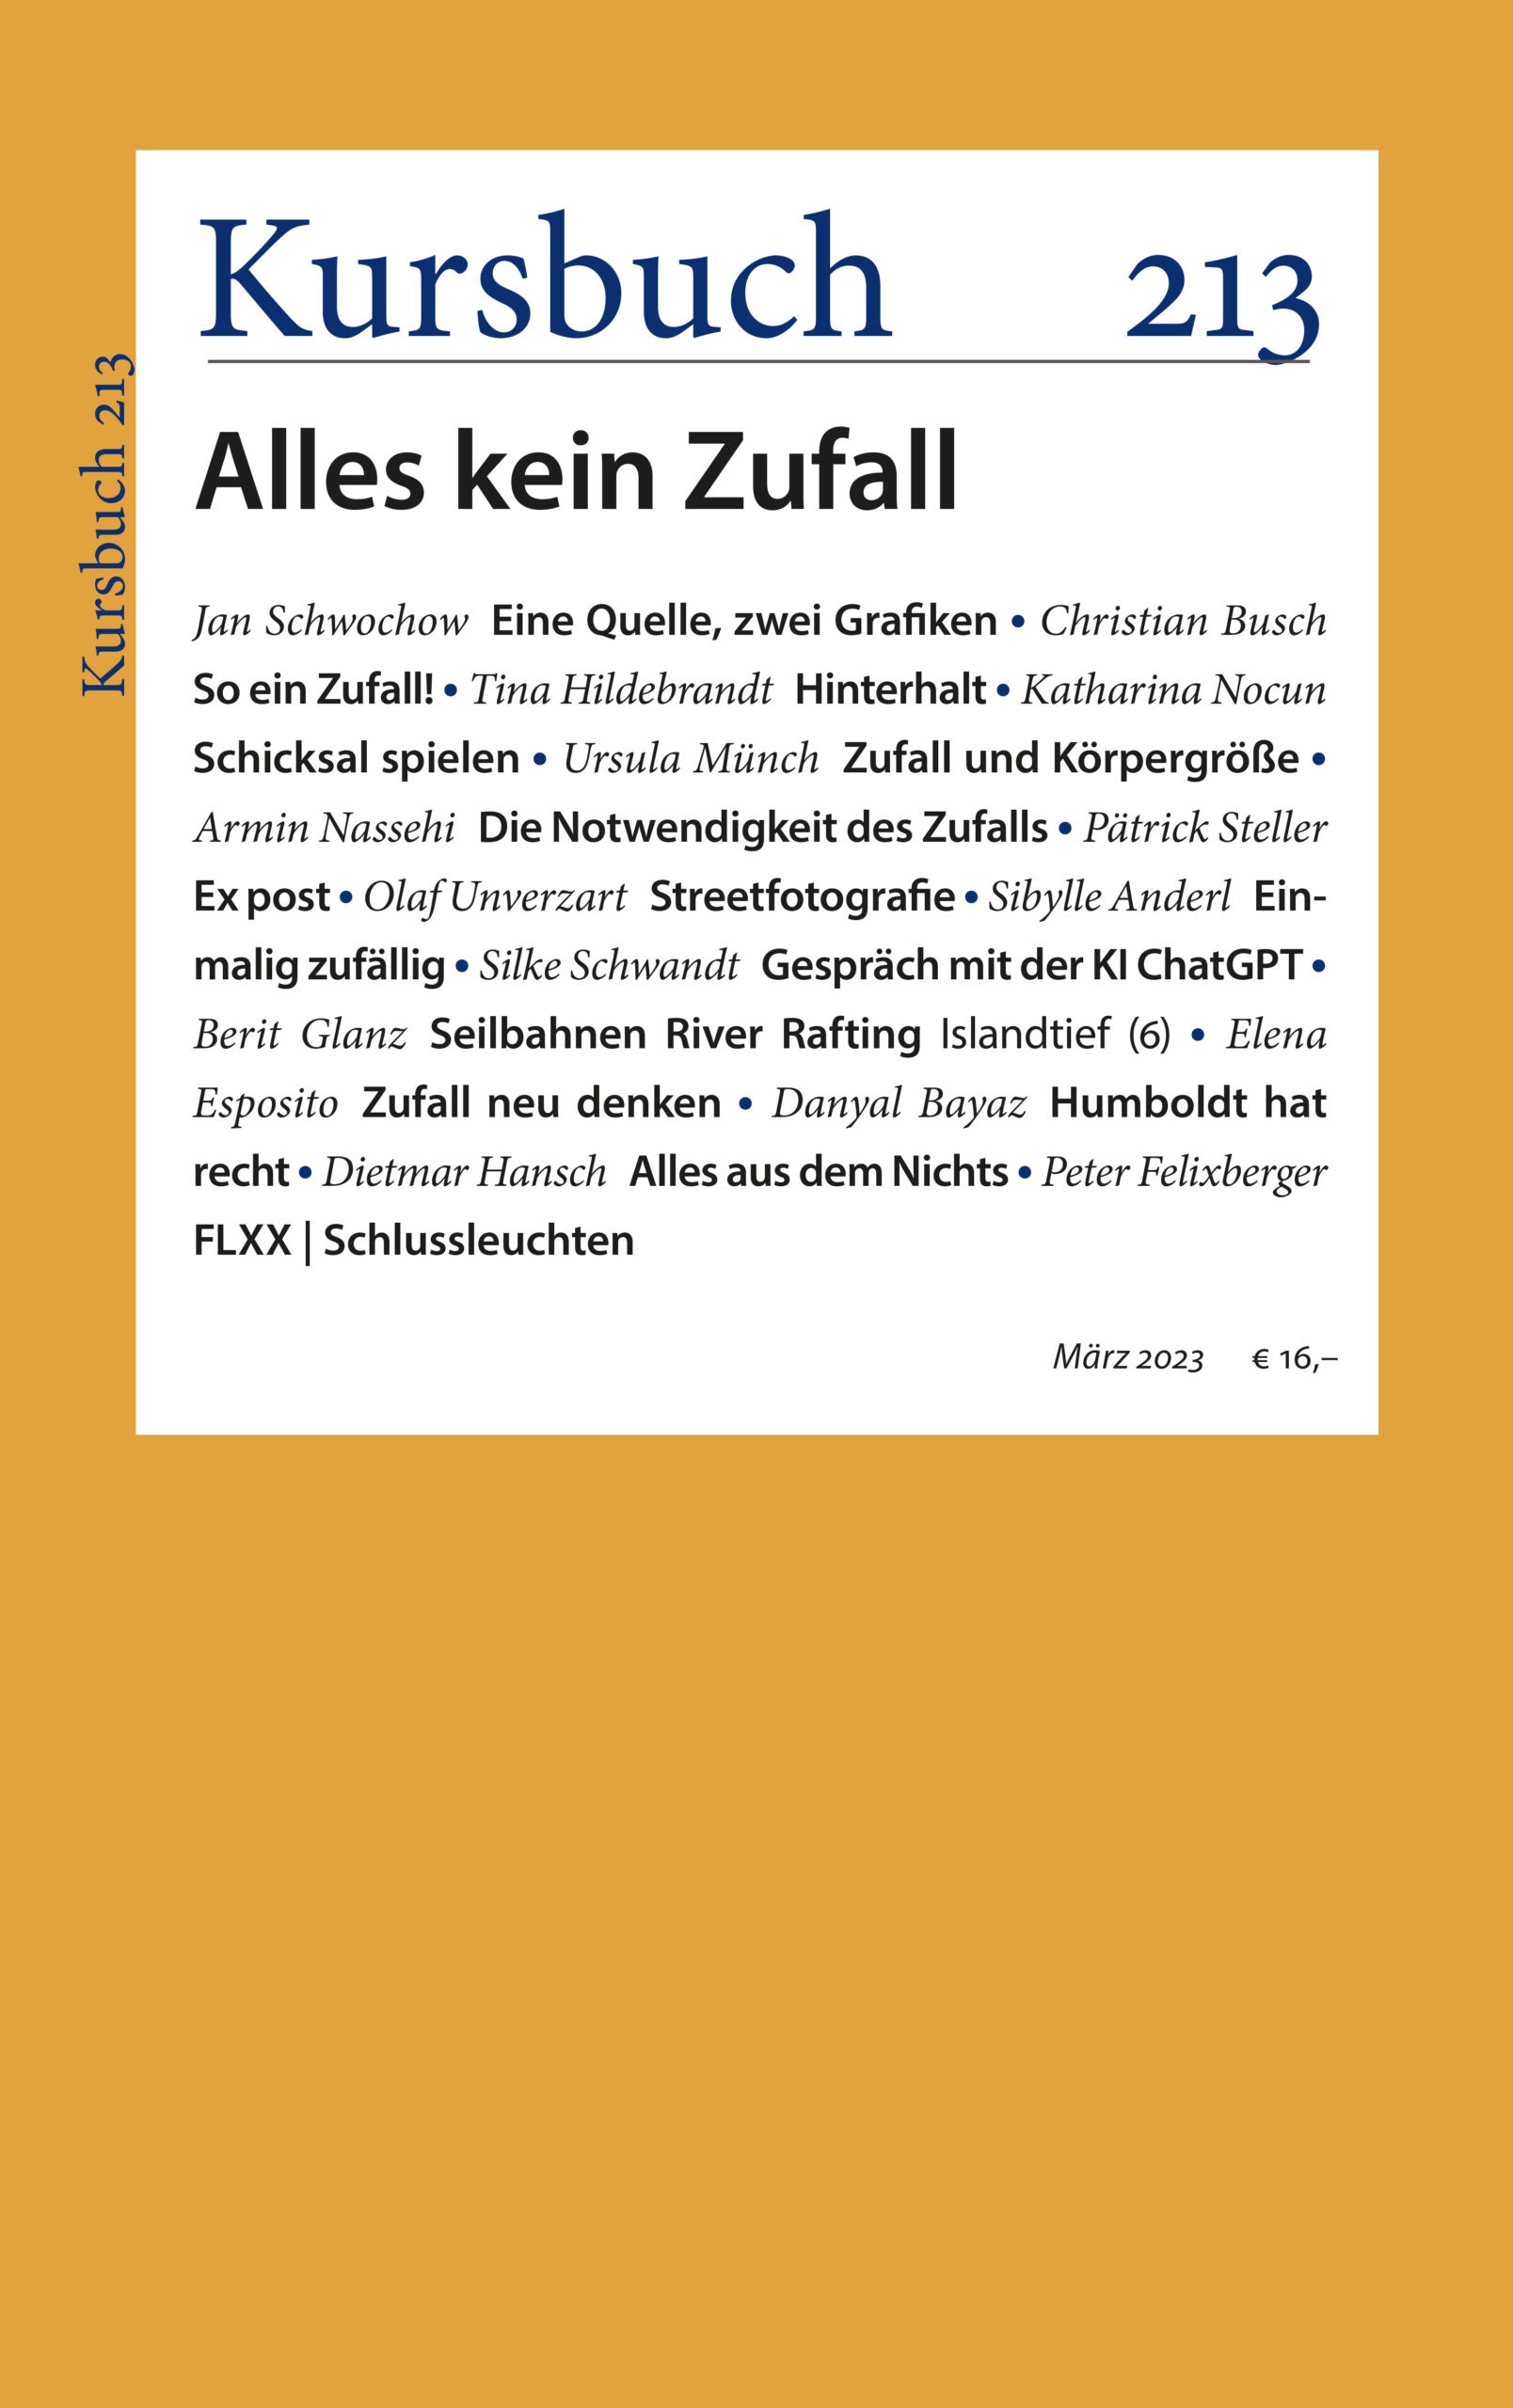 Jahresabo Print – Ab Kursbuch 213